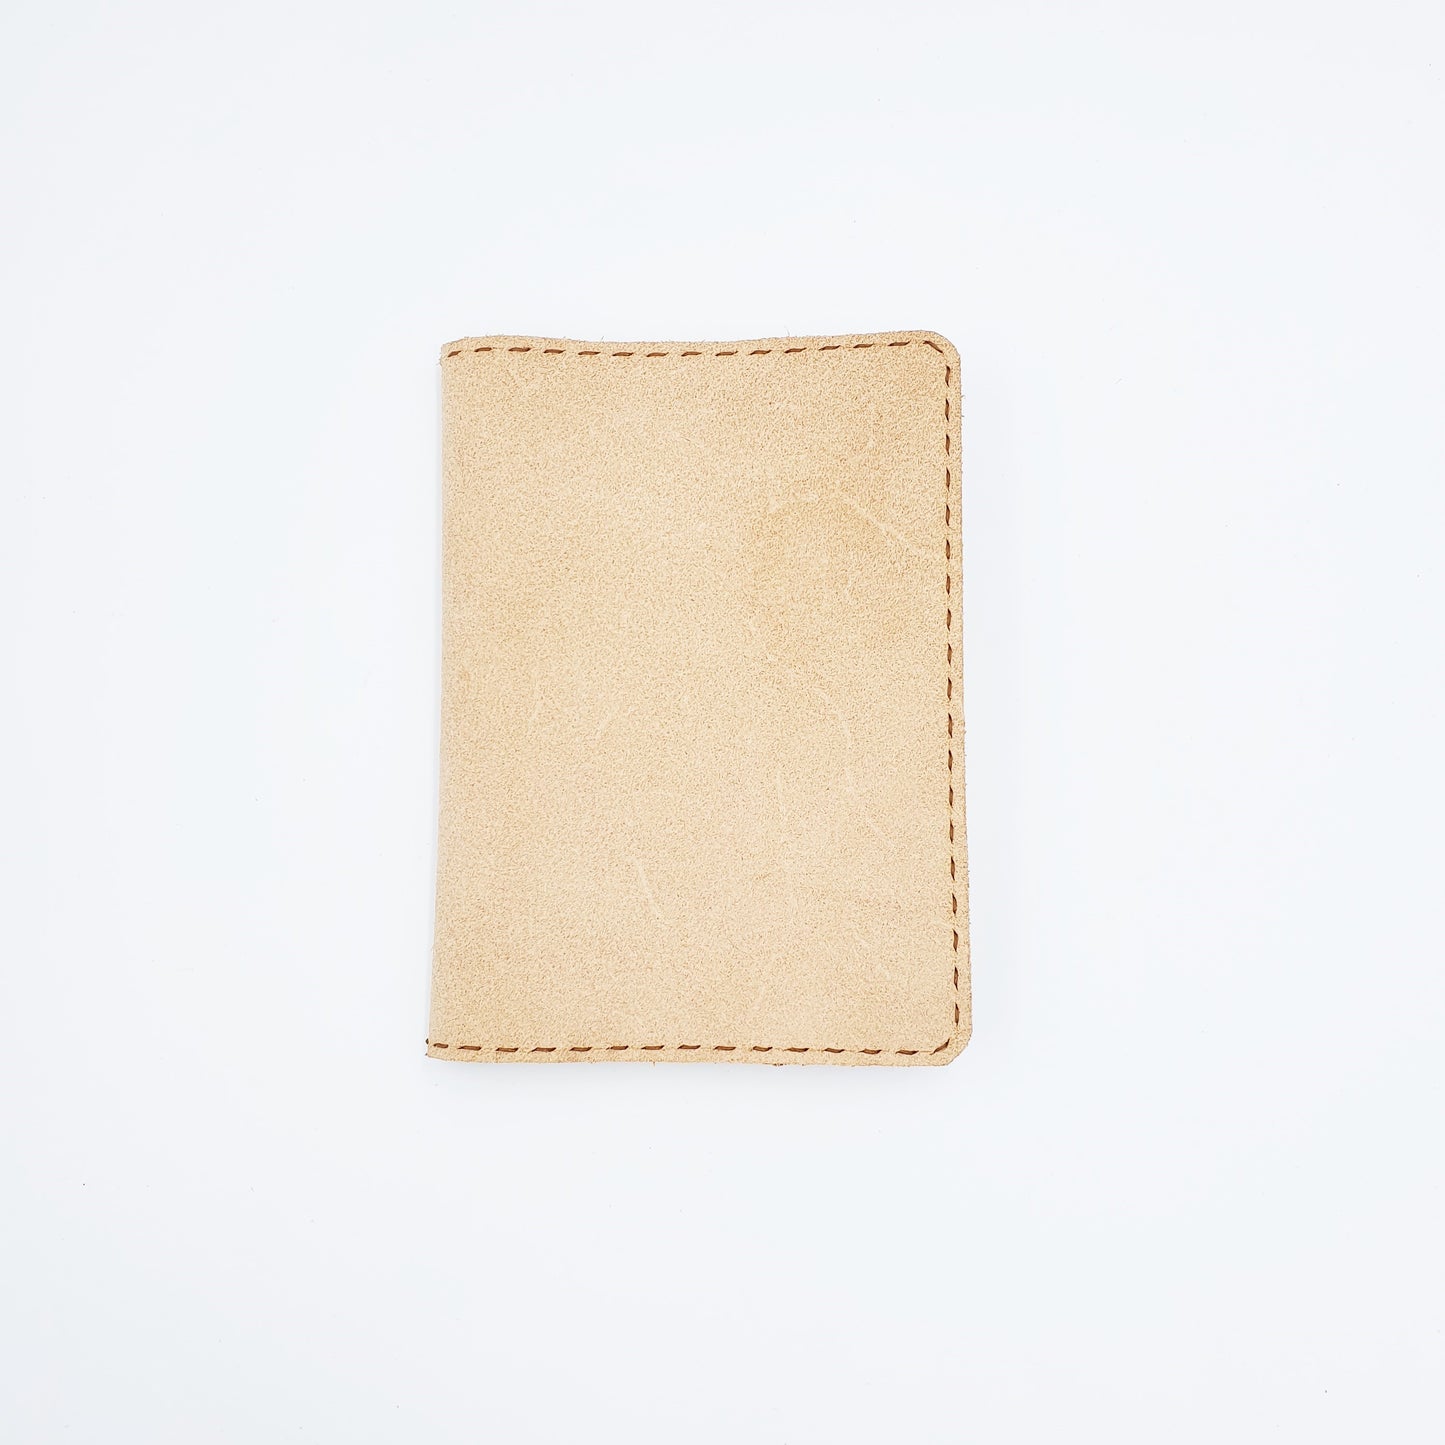 ECOLEA Passport Traveller's Notebook Sleeve